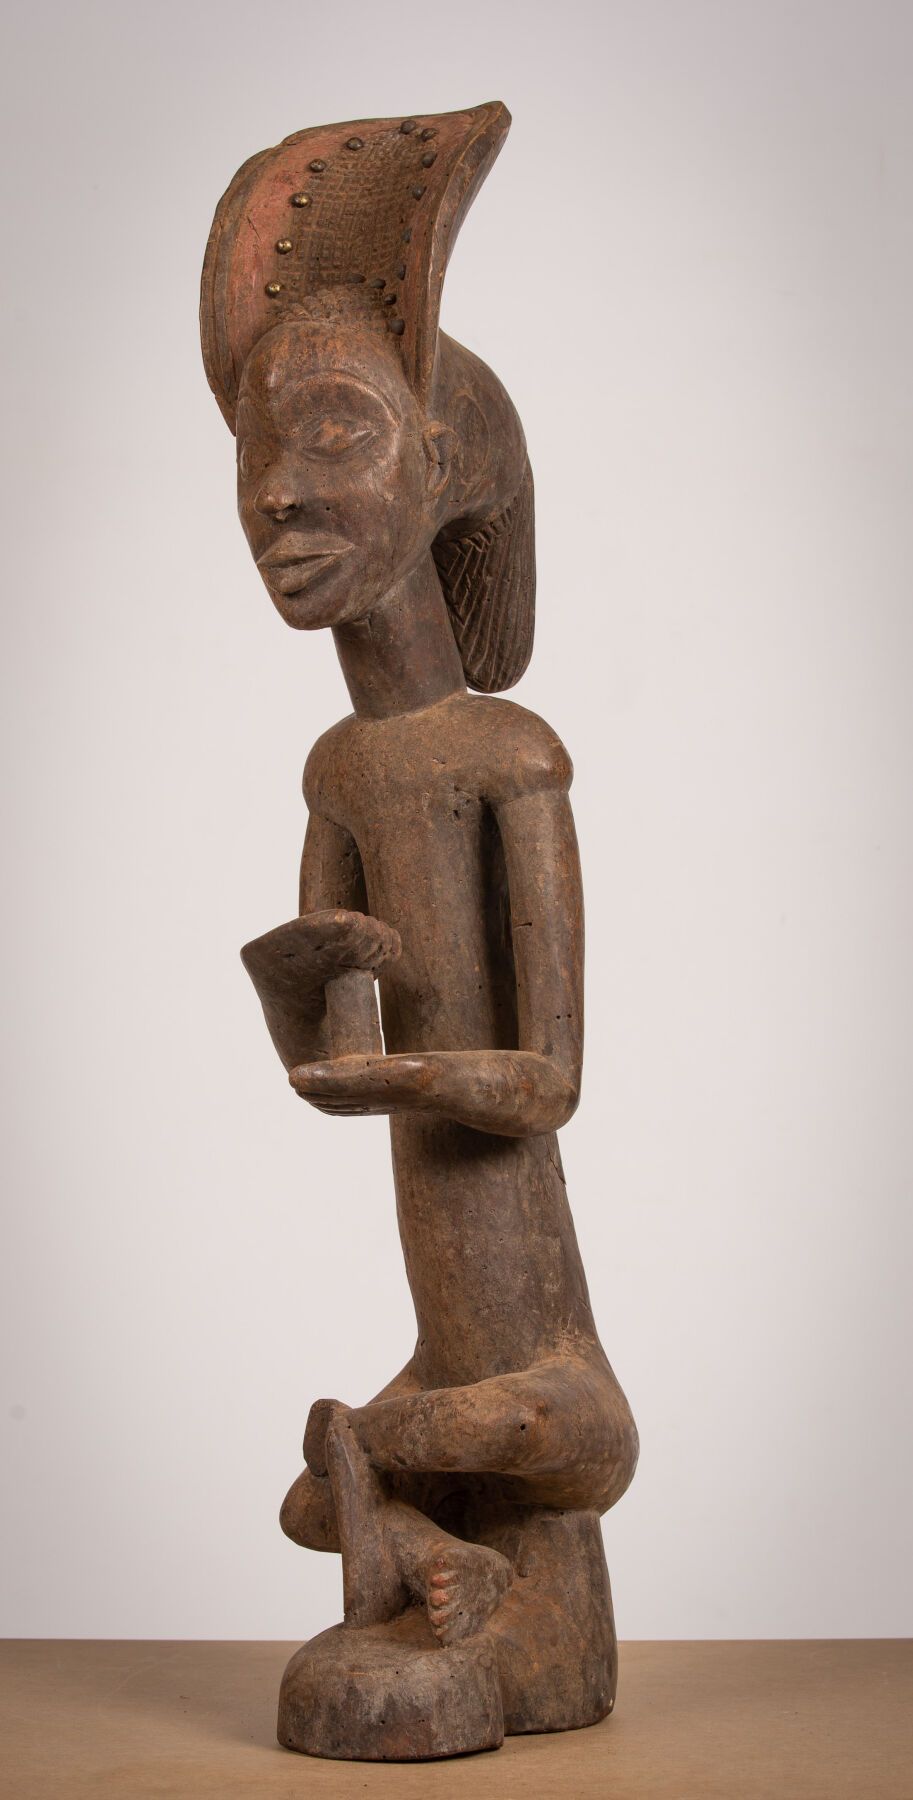 Null TABWA？（安哥拉/刚果民主共和国）。 
雕刻的木质雕塑，一个身穿十字裙的女人，为殖民地圈子的副本。
高_70,5厘米，宽_20厘米，长_14厘米。